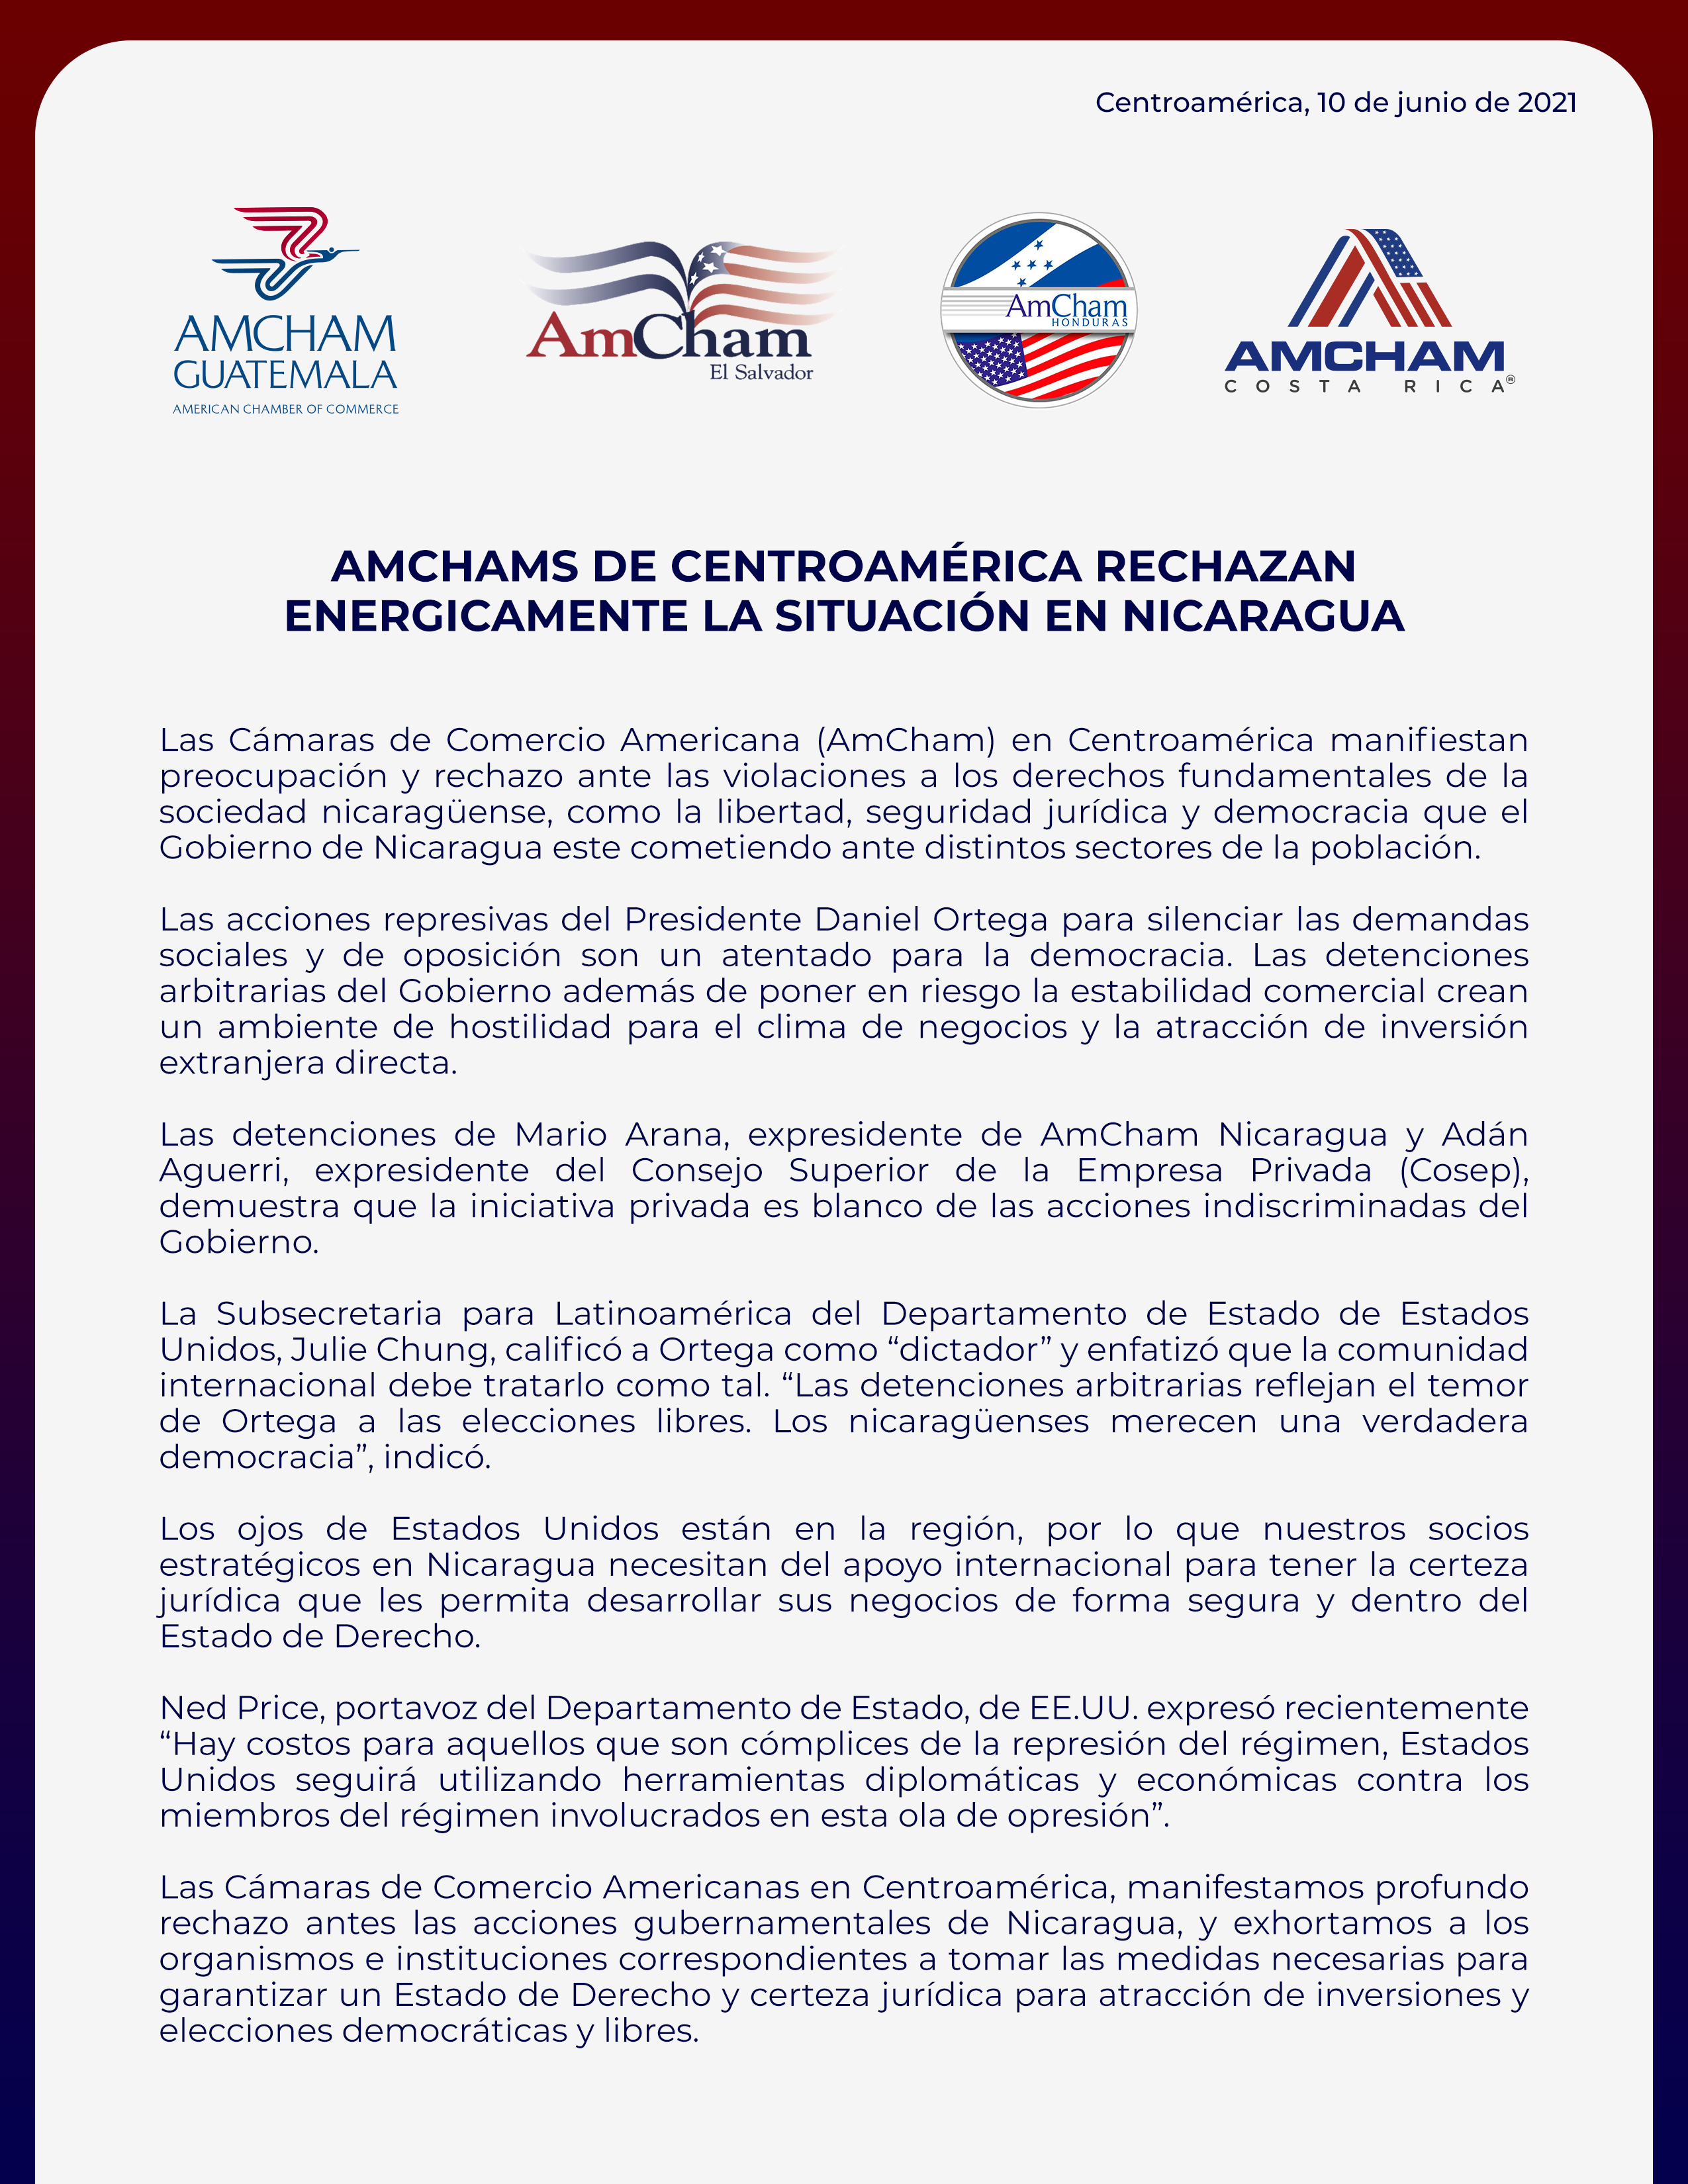 AmChams Centroamérica situación Nicaragua